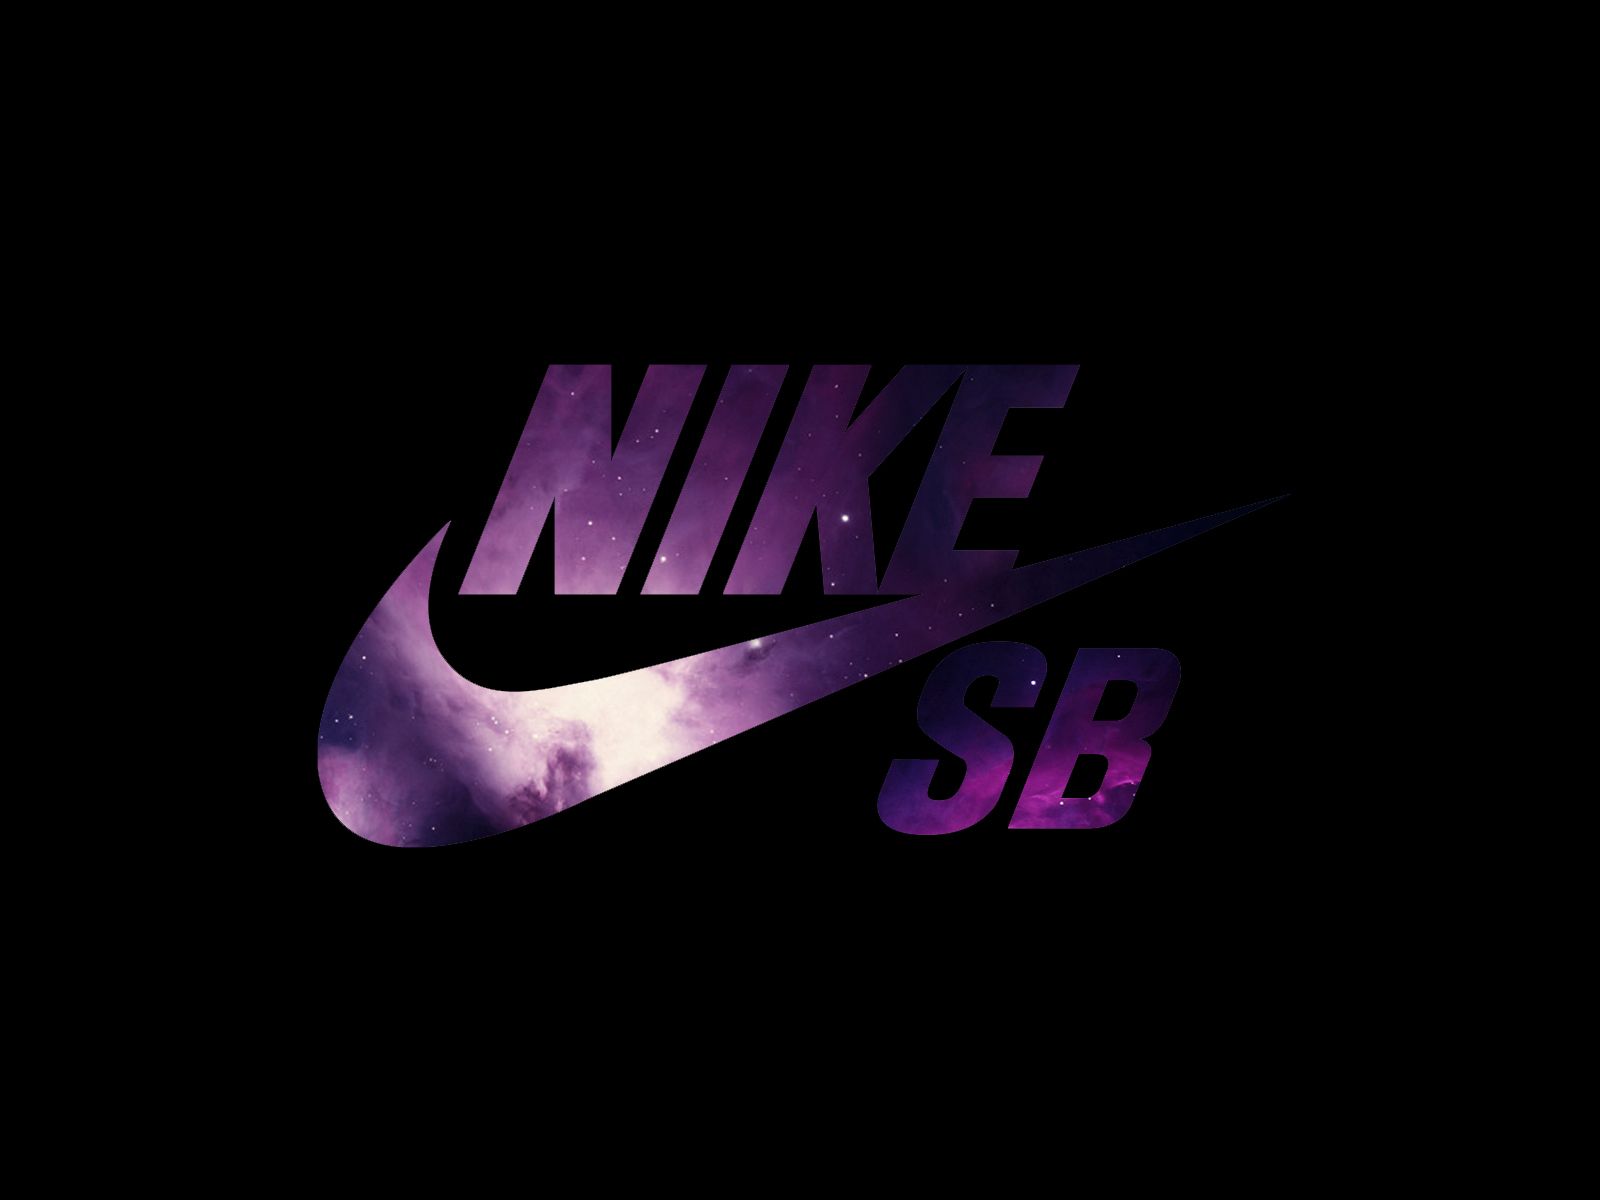 Contratista inercia Familiarizarse Galaxy Nike logo sign - Wallpaper Cave